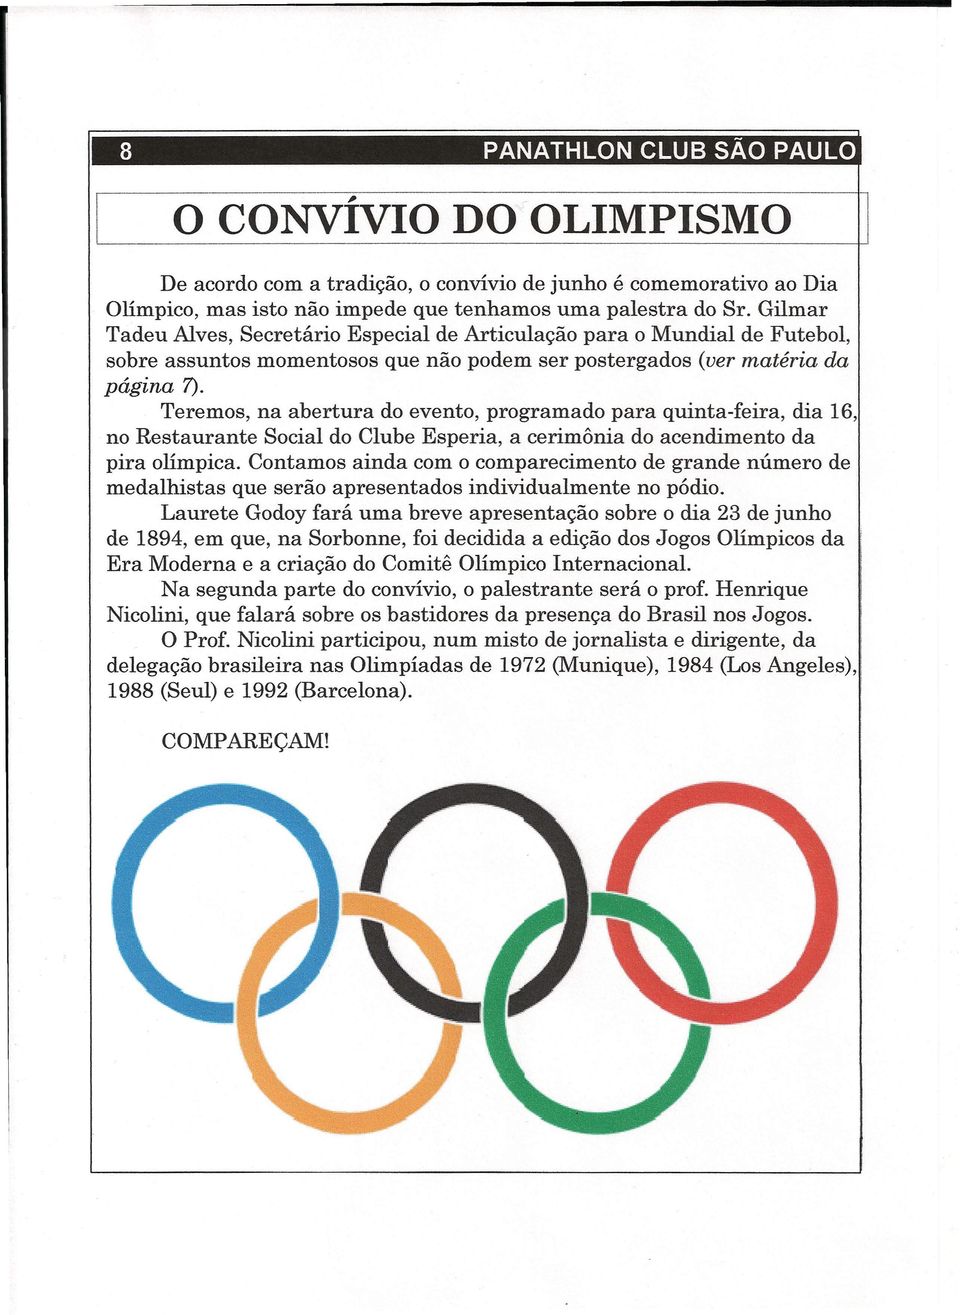 Gilmar Tadeu Alves, Secretário Especial de Articulação para o Mundial de Futebol, sobre assuntos momentosos que não podem ser postergados (ver matéria da página 7).